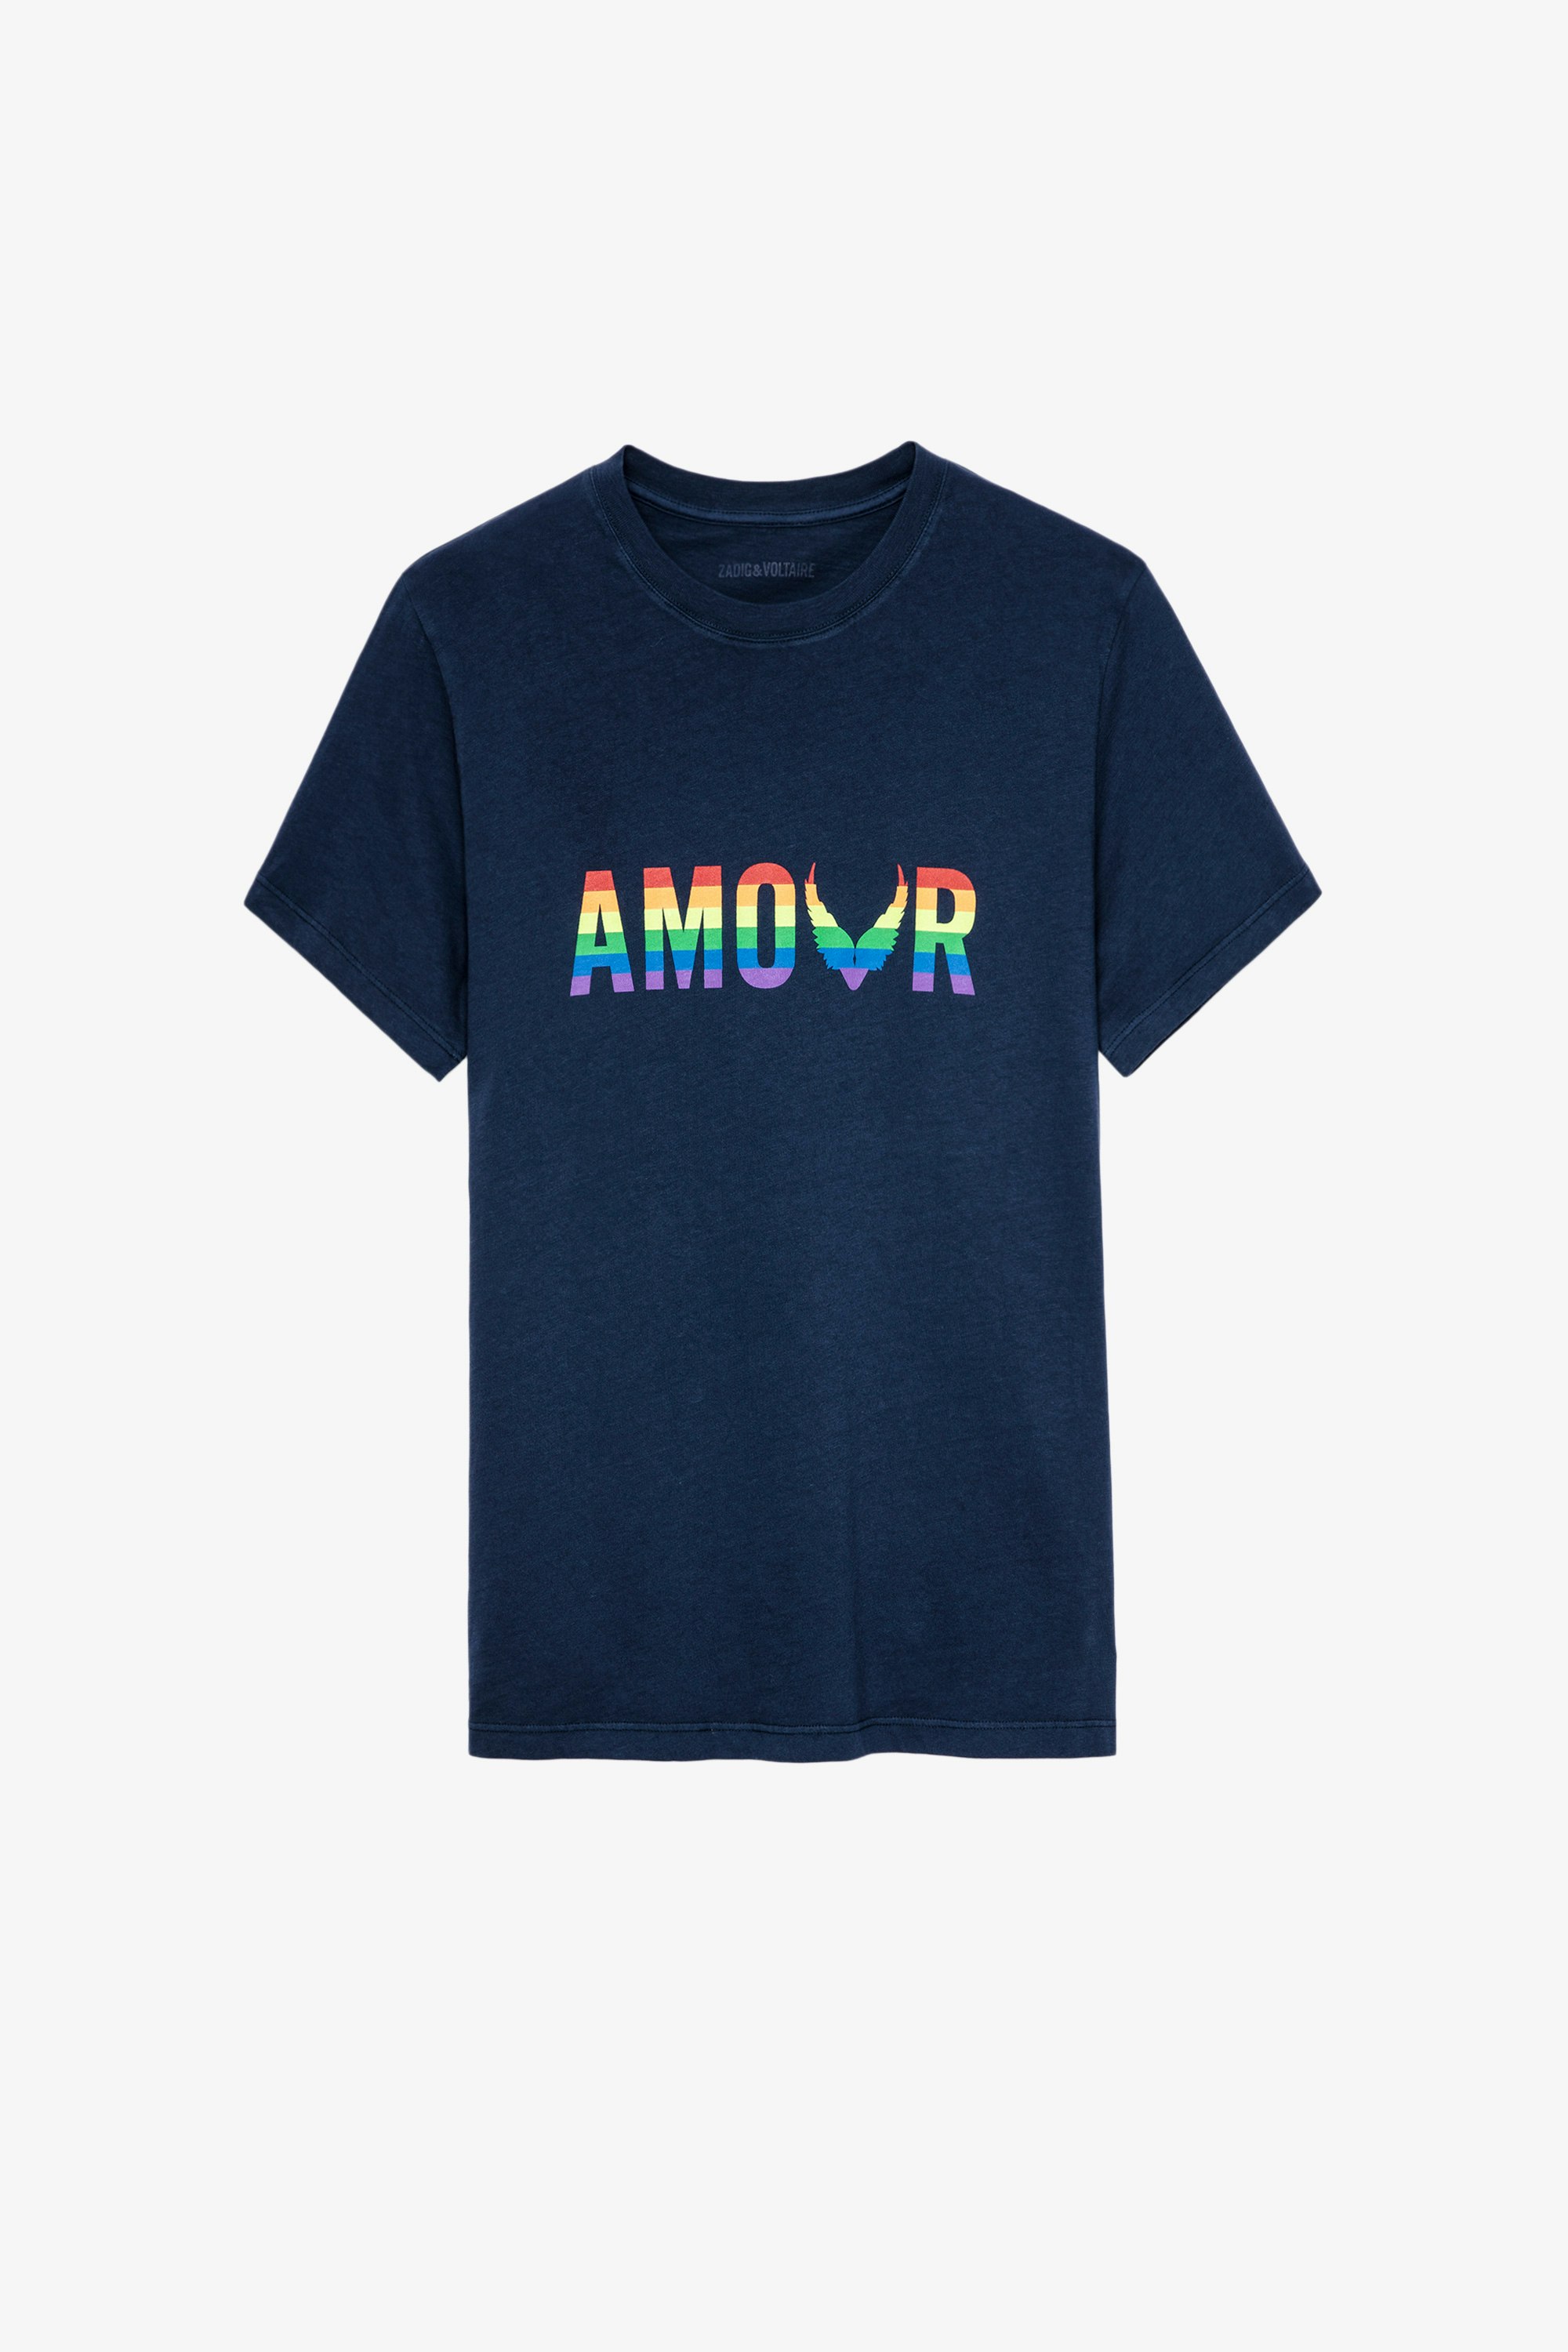 T-Shirt Tommy Amour Wings T-shirt en coton bleu marine imprimé Amour multicolore Femme